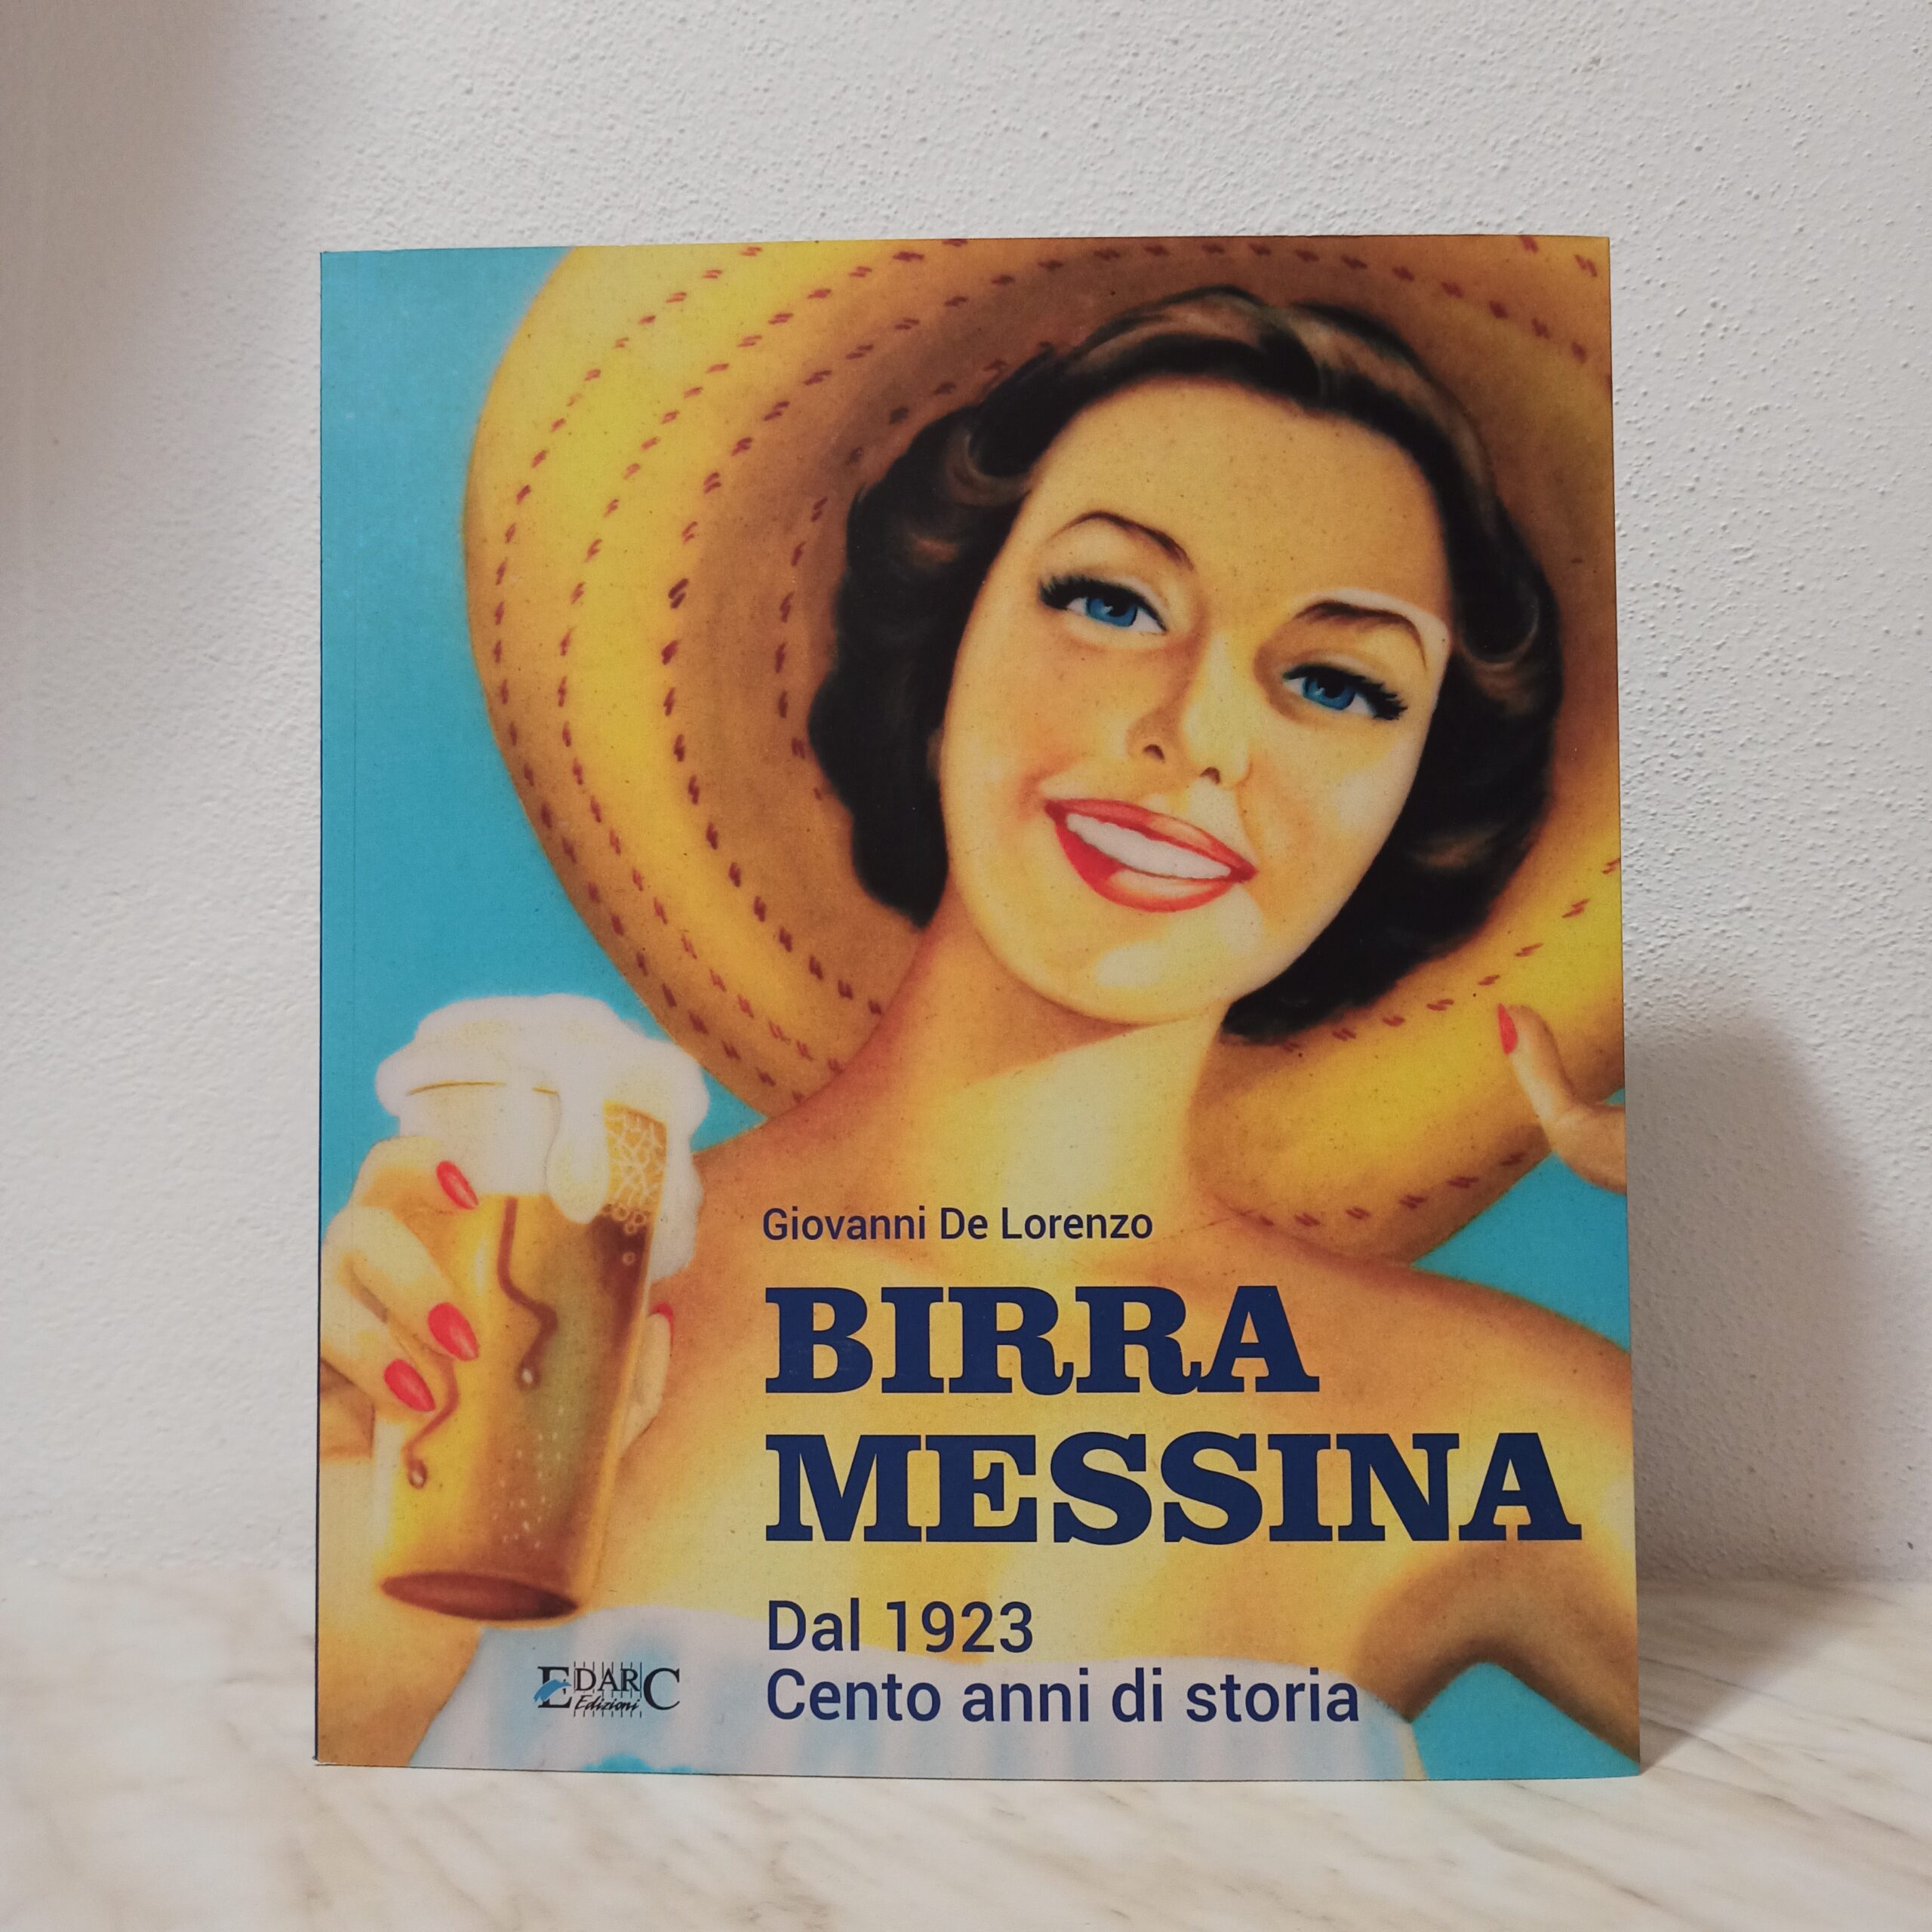 Birra Messina, dal 1923 cento anni di birra